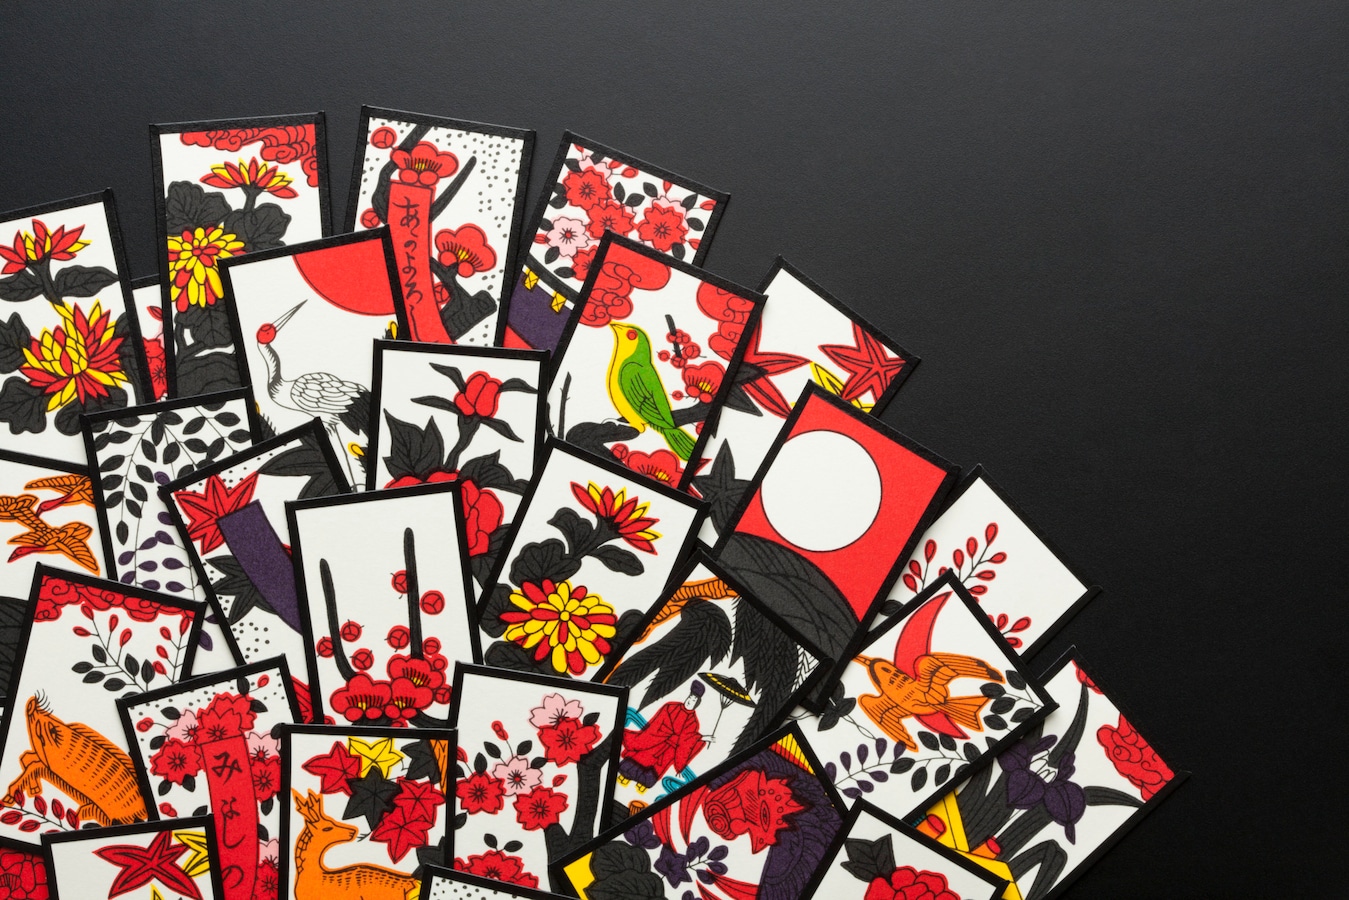 ヤクザ は花札用語 花札と賭博の結びつき カードゲーム ボードゲーム All About